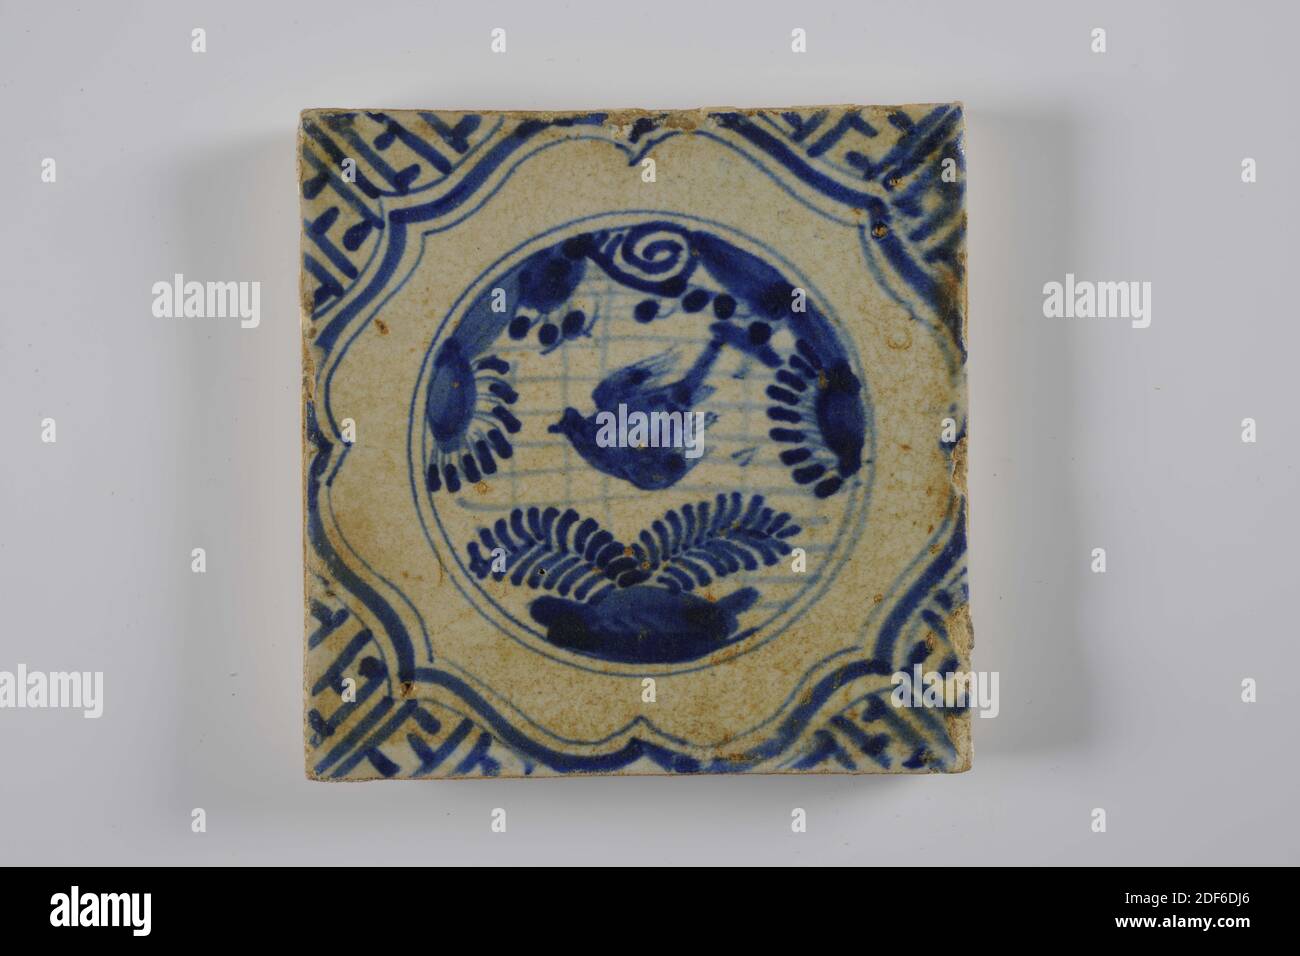 Tuile murale, Anonyme, deuxième quart du XVIIe siècle, glaçure d'étain, faïence, général : 13.4 x 13.4 x 1,6 cm (134 x 134 x 16mm), fleur, oiseau, tuile murale en faïence recouverte de glaçure d'étain et peinte en bleu. La tuile représente un jardin chinois dans un cercle. L'image se compose de fleurs et d'un oiseau. La tuile a un cadre de bretelles et de méandres comme motif de coin, 1995 Banque D'Images